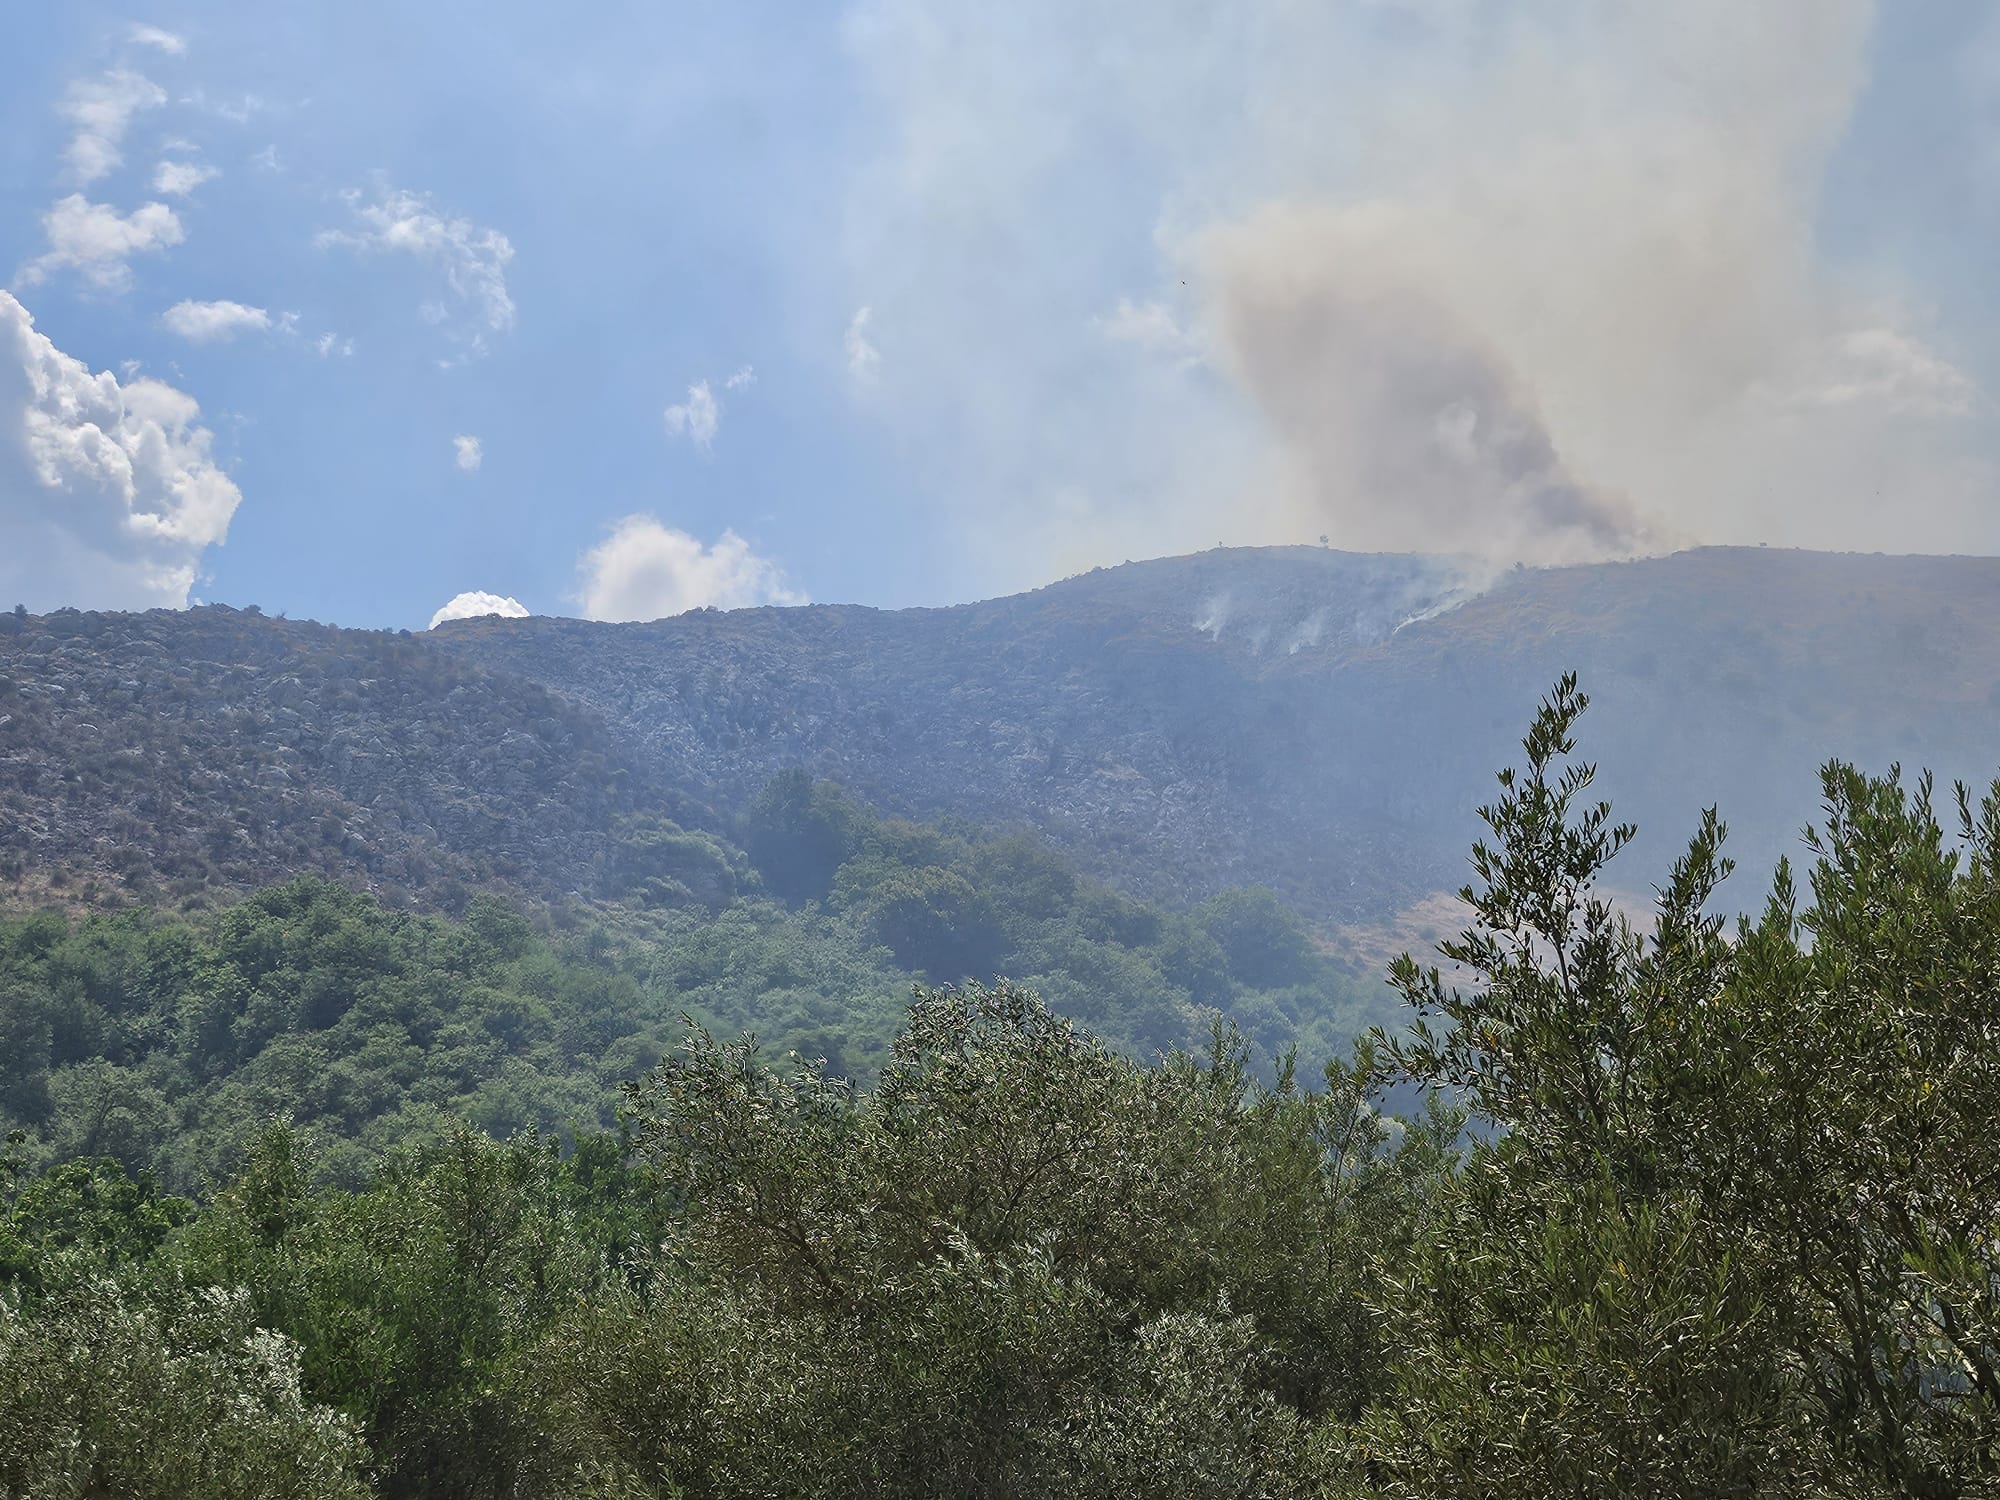 Teggiano, incendio a monte Cocuzzo delle Puglie: rischi di frane e monitoraggi in corso